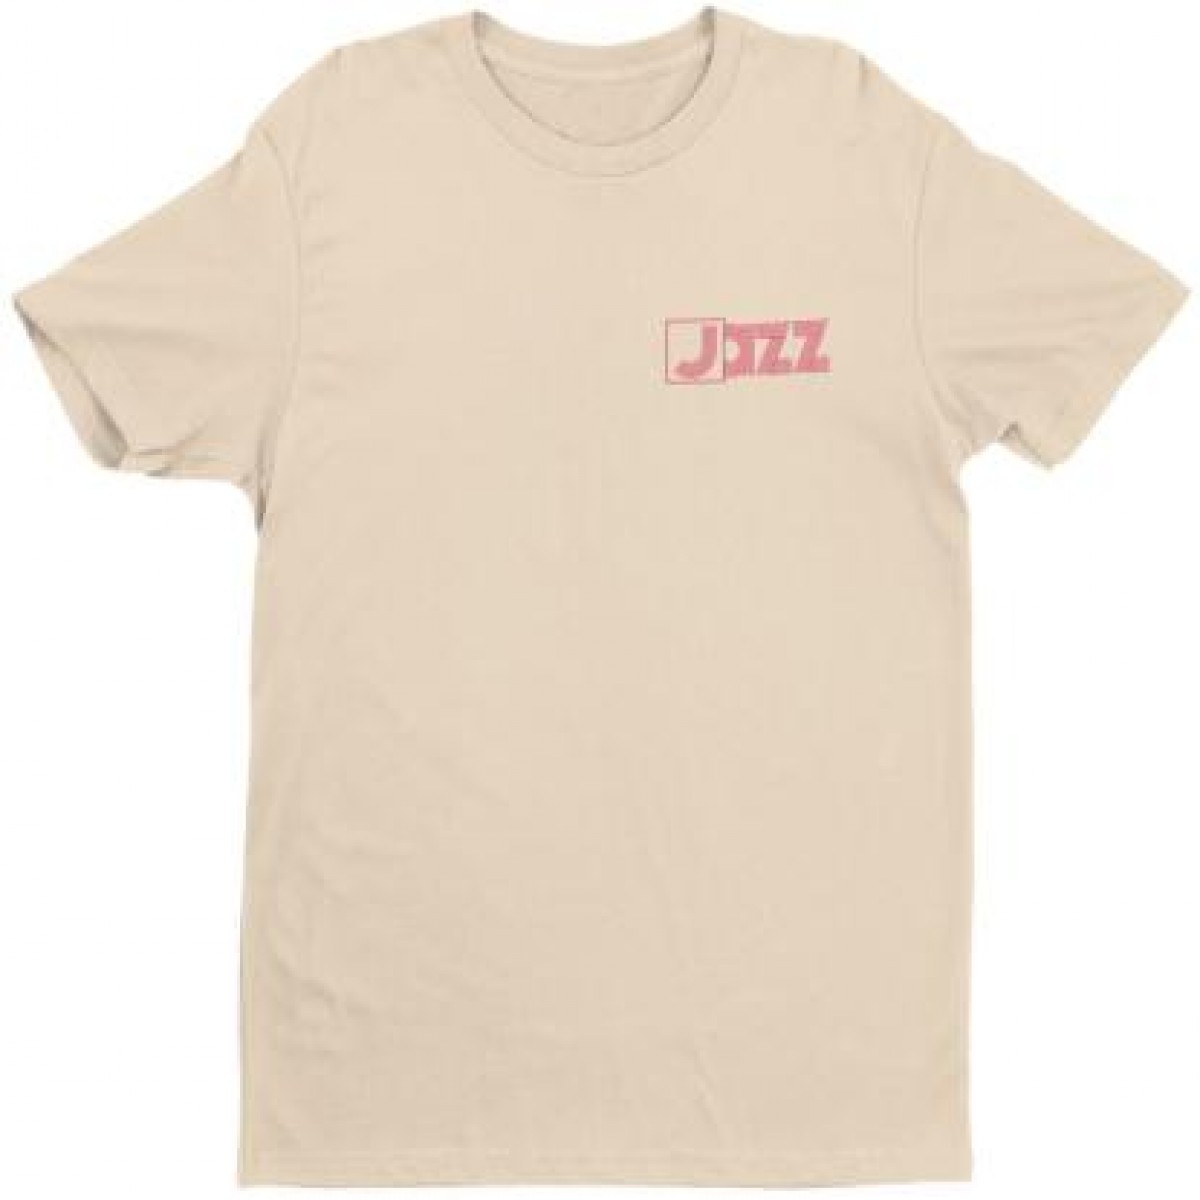 We Release Jazz - Jazz T-shirt - Natural XL / WRWTFWW Records WRJ-T-N ...